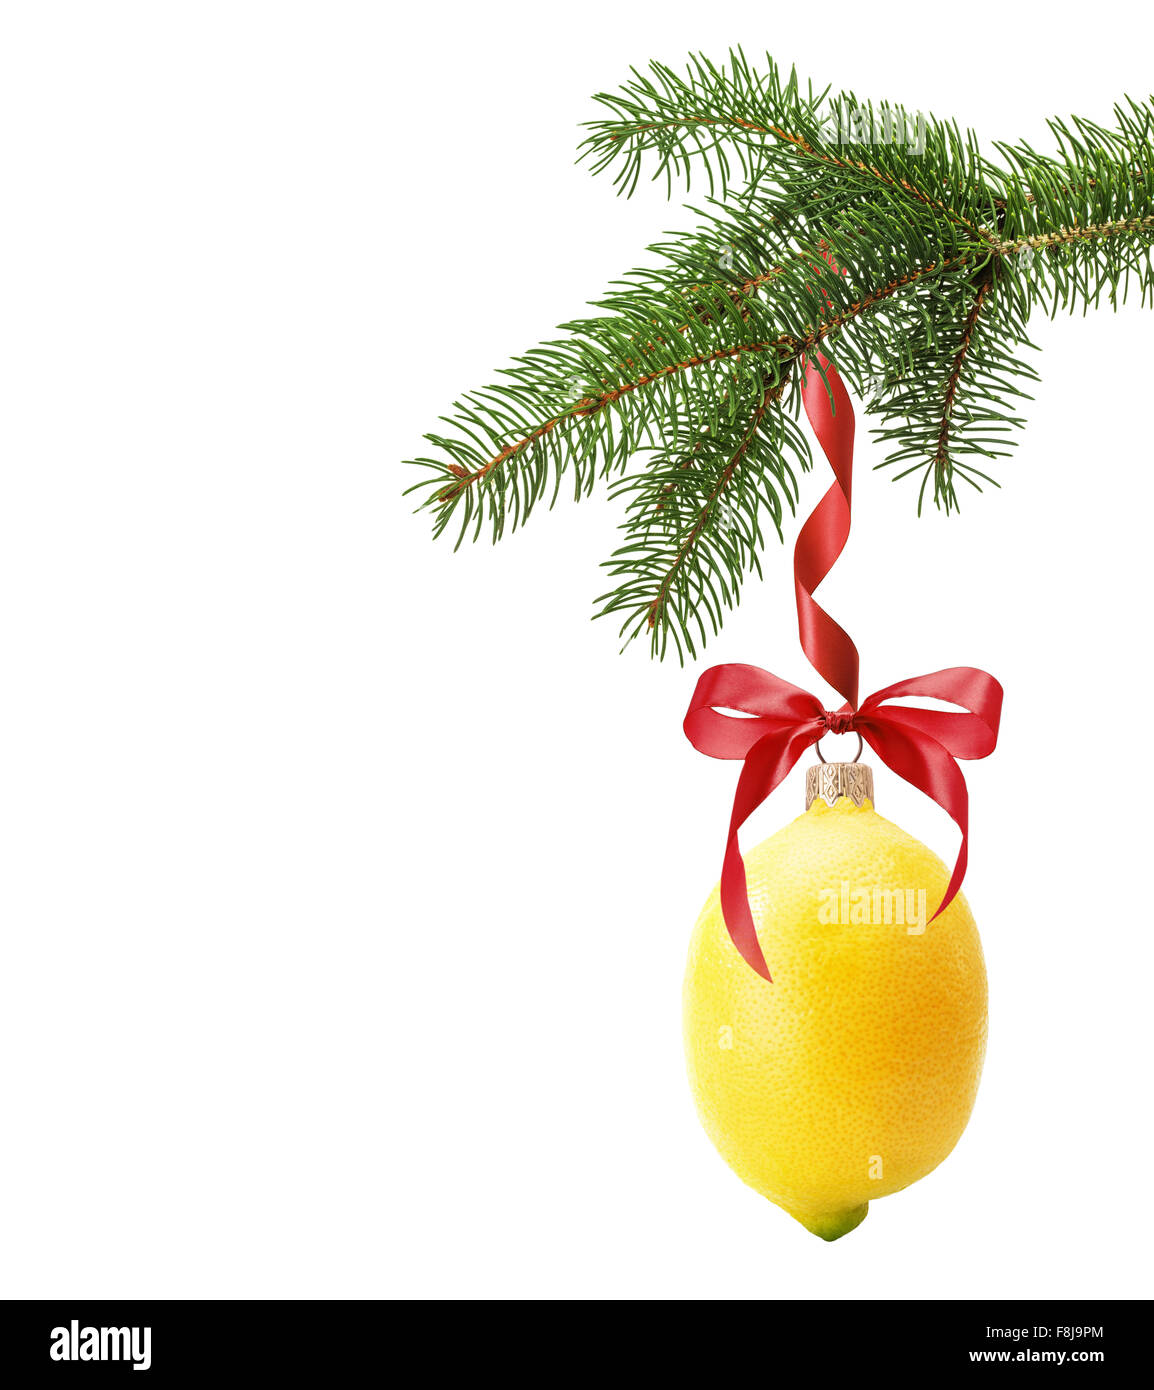 Weihnachtsbaum Zweig mit Weihnachtskugel in Form einer Zitrone auf dem weißen Hintergrund isoliert. Stockfoto